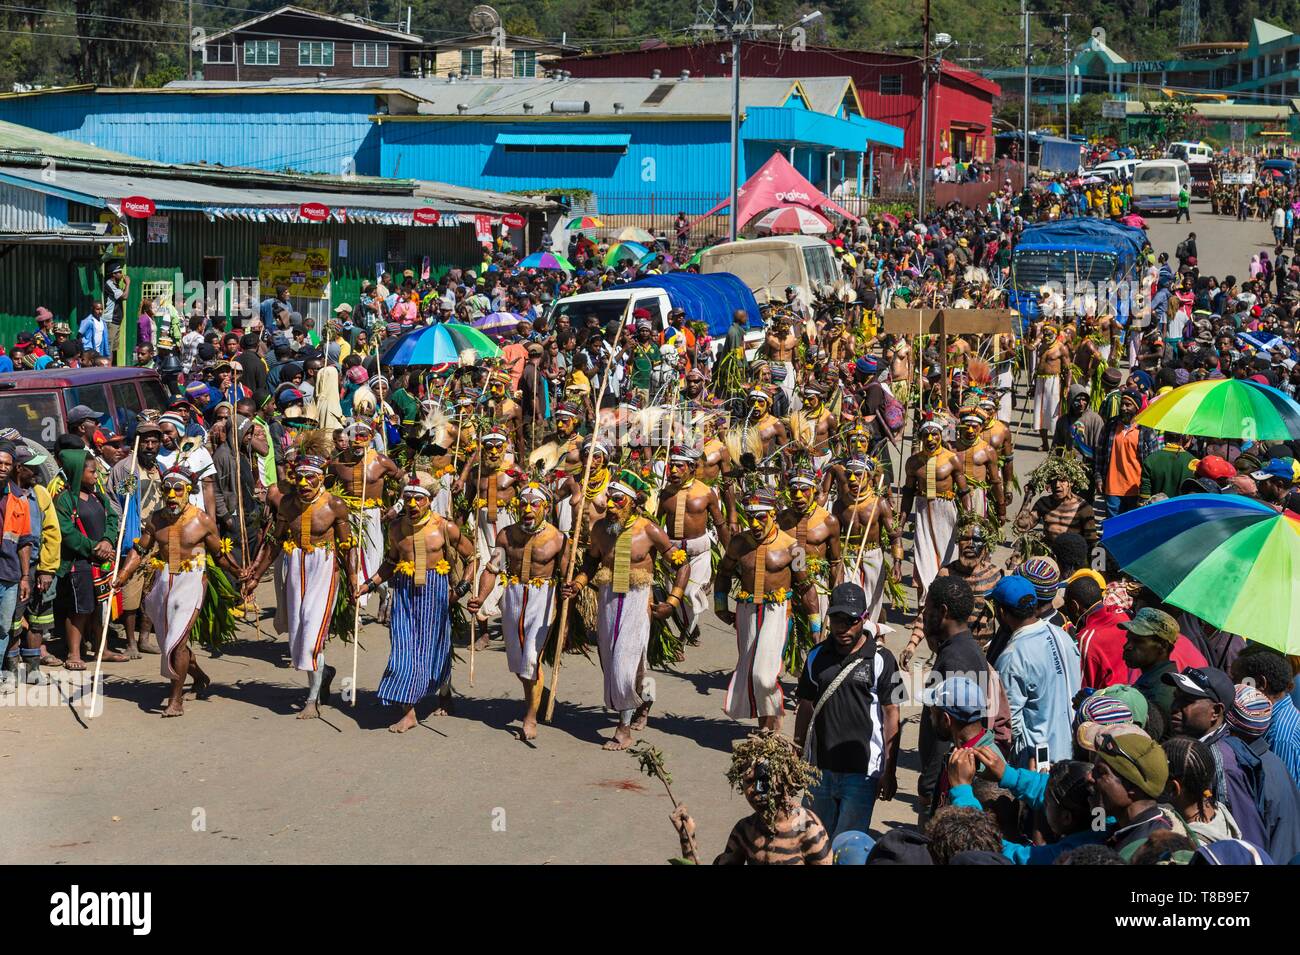 Papua-neuguinea, Enga Provinz, Enga Stamm, Enga zeigen, Wabag region, Tänzer gekleidet für eine Sing-sing (traditionelle Tanz) zu Fuß von Wabag Show Arena Stockfoto